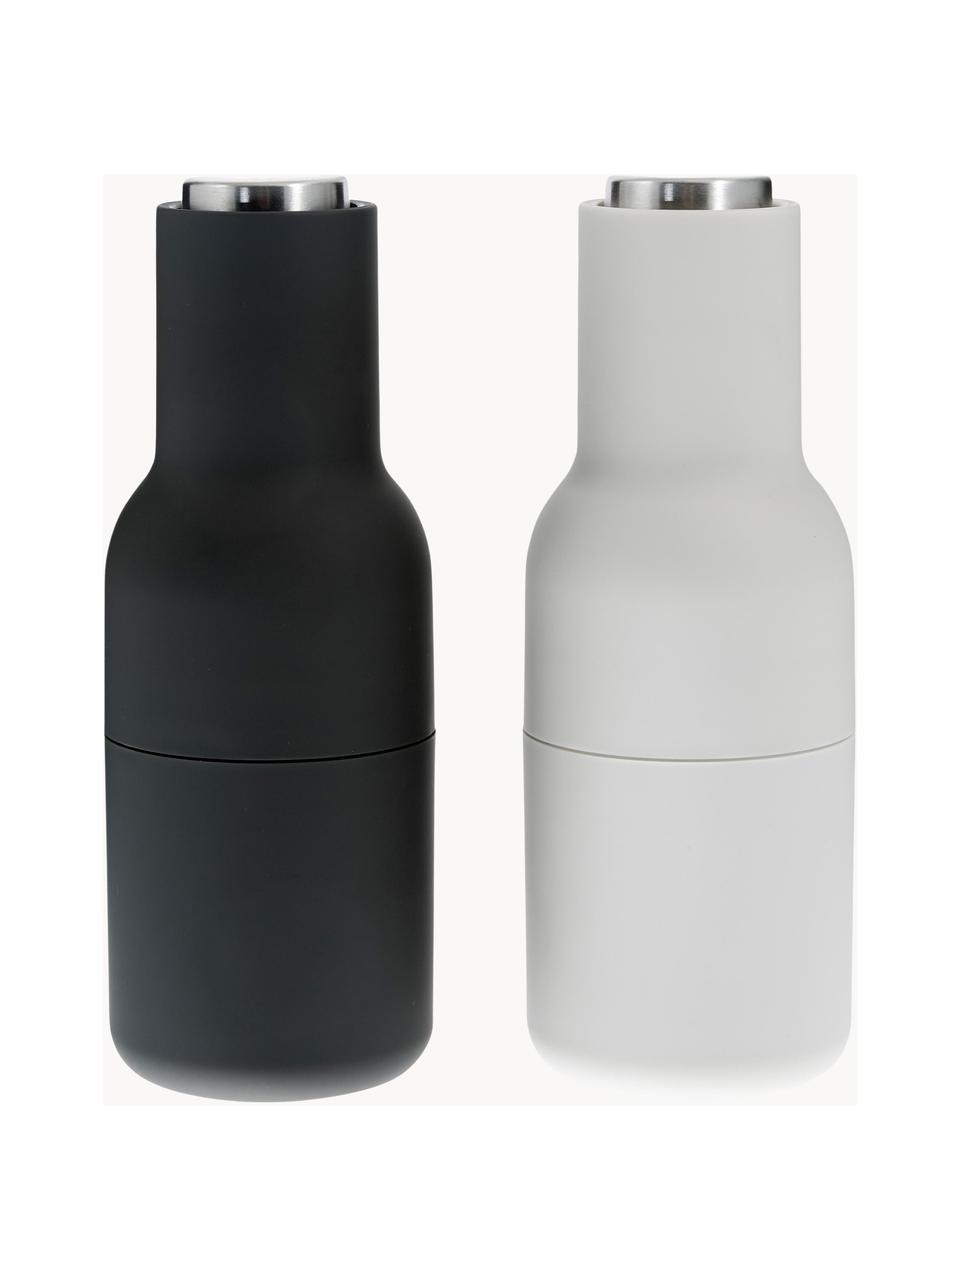 Deter triatlon Rondsel Designer zout & pepermolen Bottle Grinder met deksel van edelstaal, set van  2 | Westwing